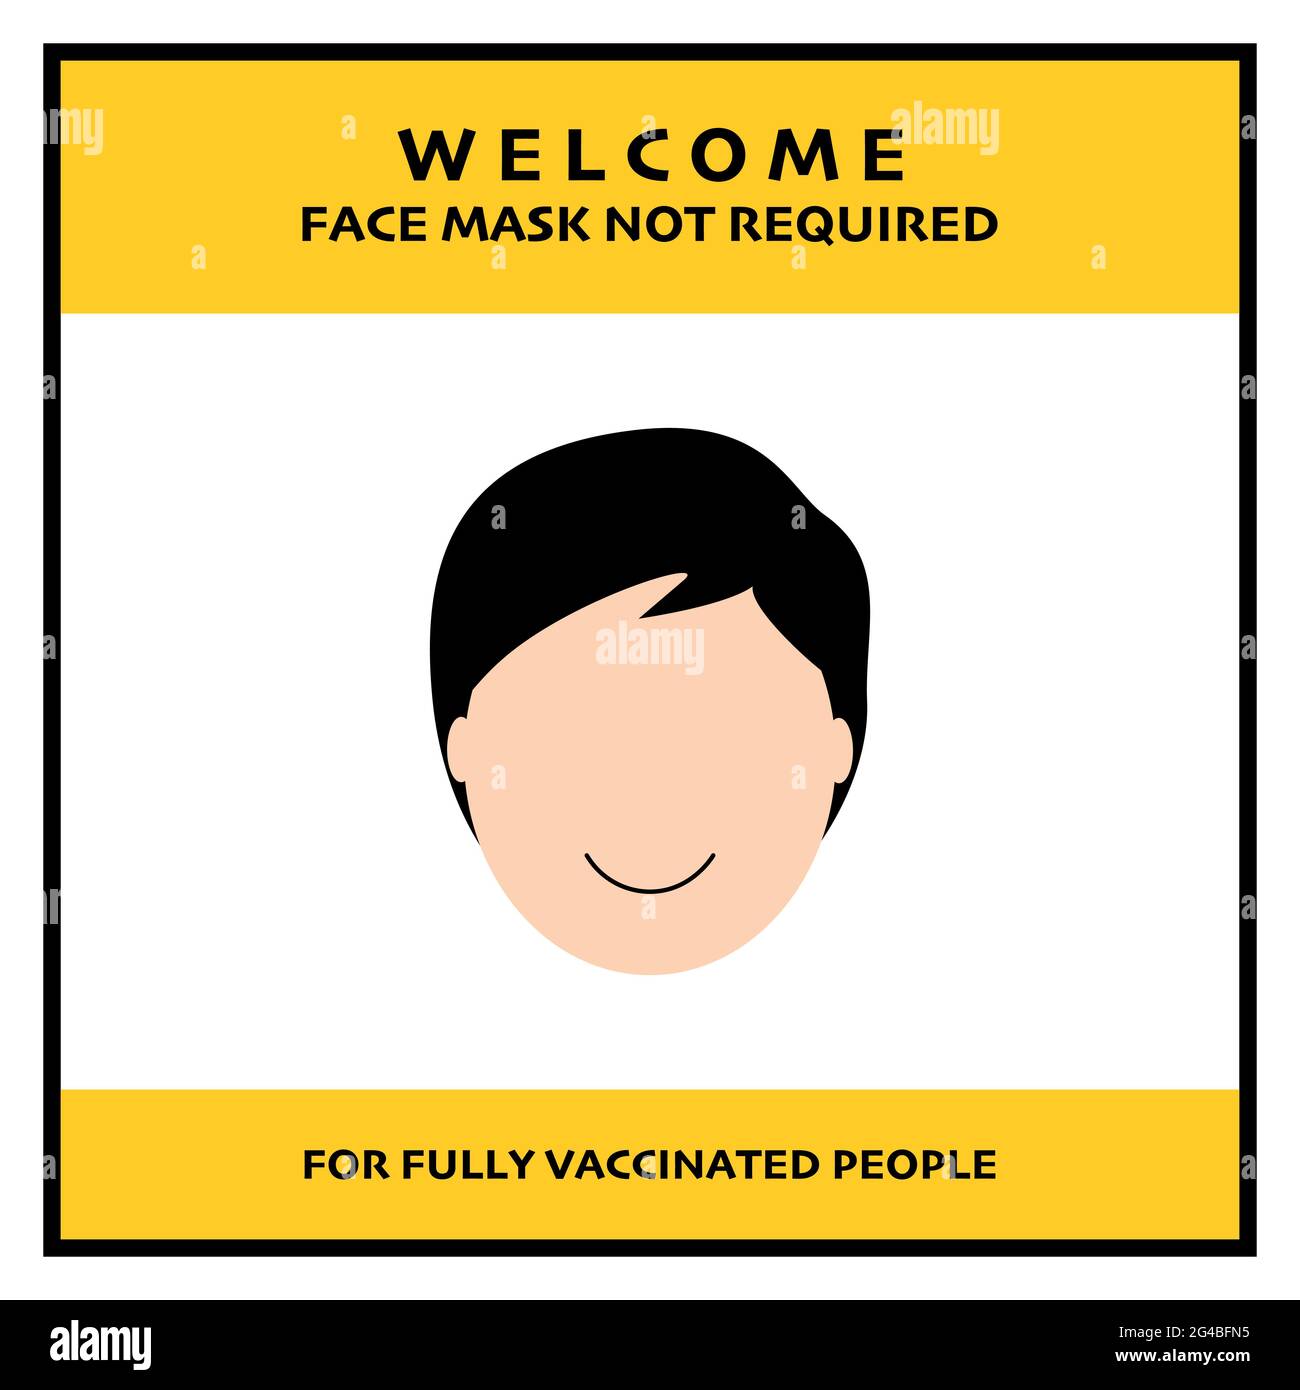 Maschera facciale non richiesta per striscione per persone vaccinate completamente covid-19. Illustrazione vettoriale di persone che sorridono senza maschera. Illustrazione Vettoriale